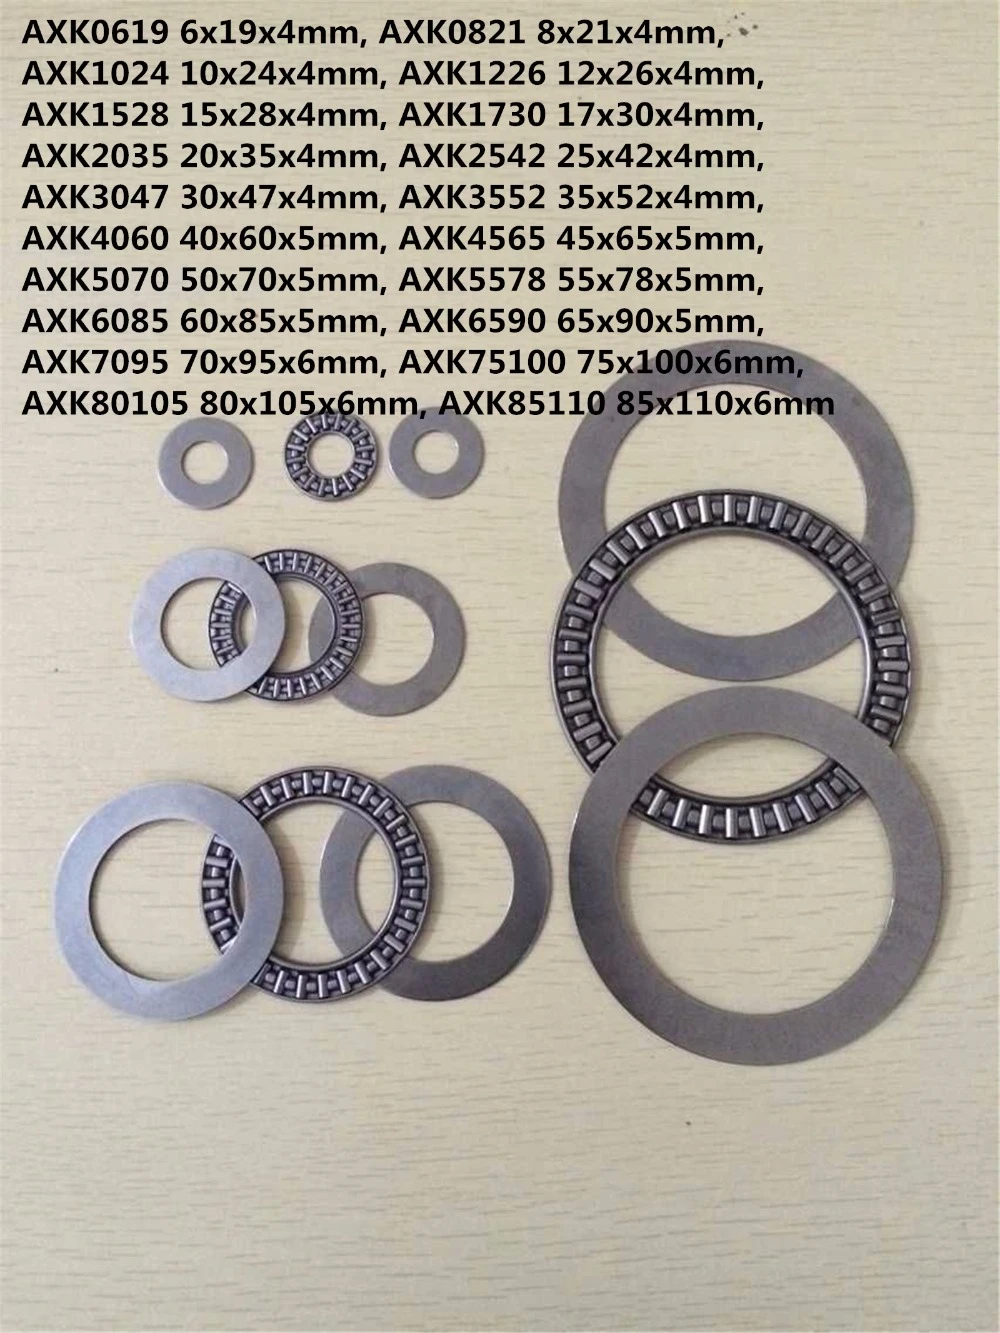 1PC AXK0619 AXK0821 AXK1024 AXK1226 AXK1528 To AXK5070 + 2AS Needle Roller Bearing Thrust Bearing + 2 Washers